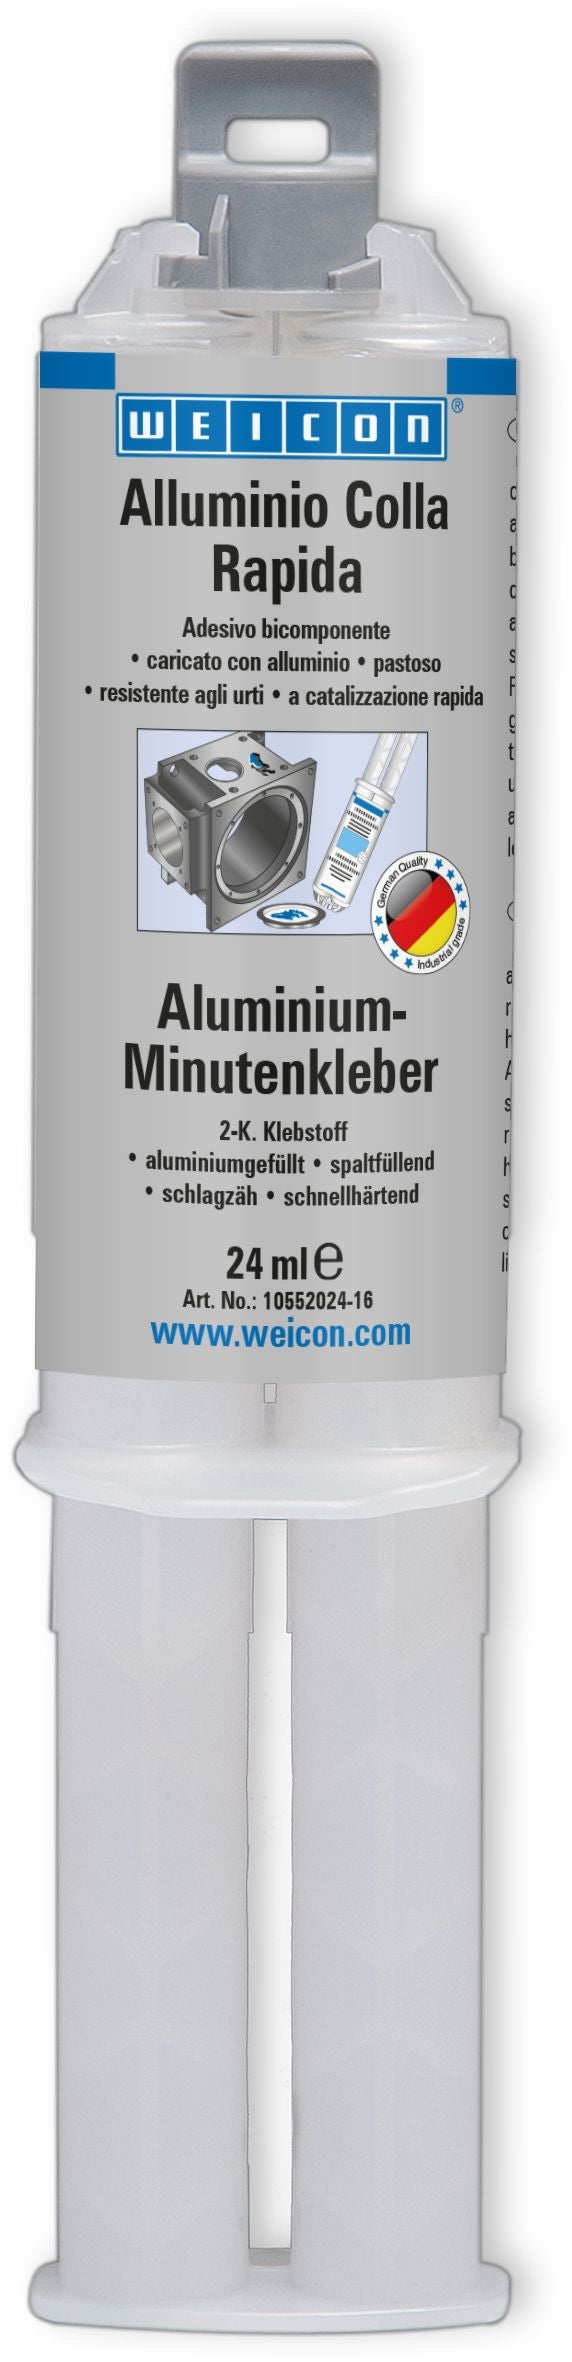 WEICON Alluminio Colla Rapida- Colla bicomponente per allumunio